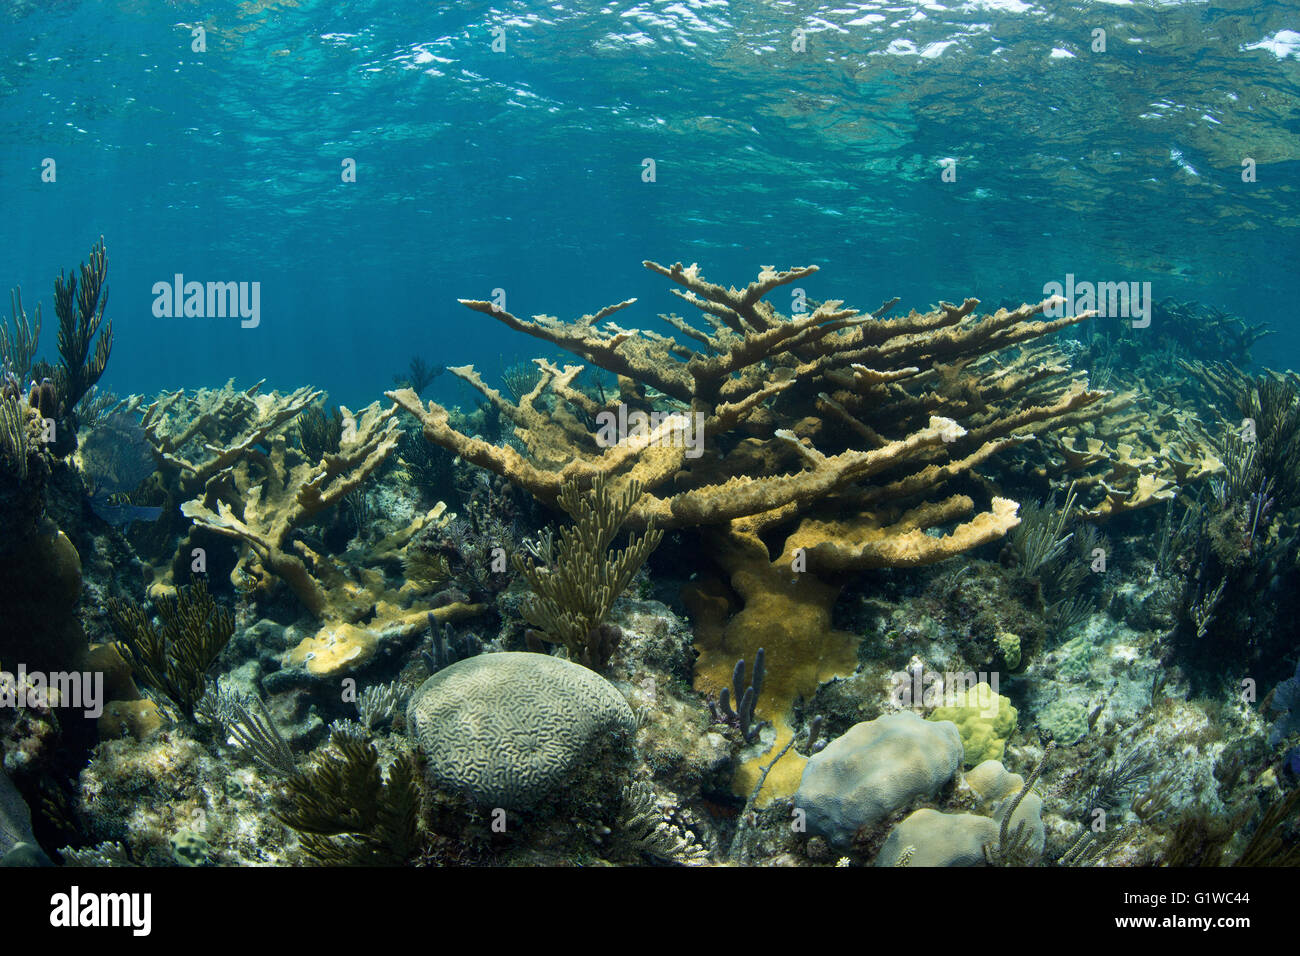 Vista de un arrecife de coral en el ábaco. Abundan los corales duros. Foto de stock